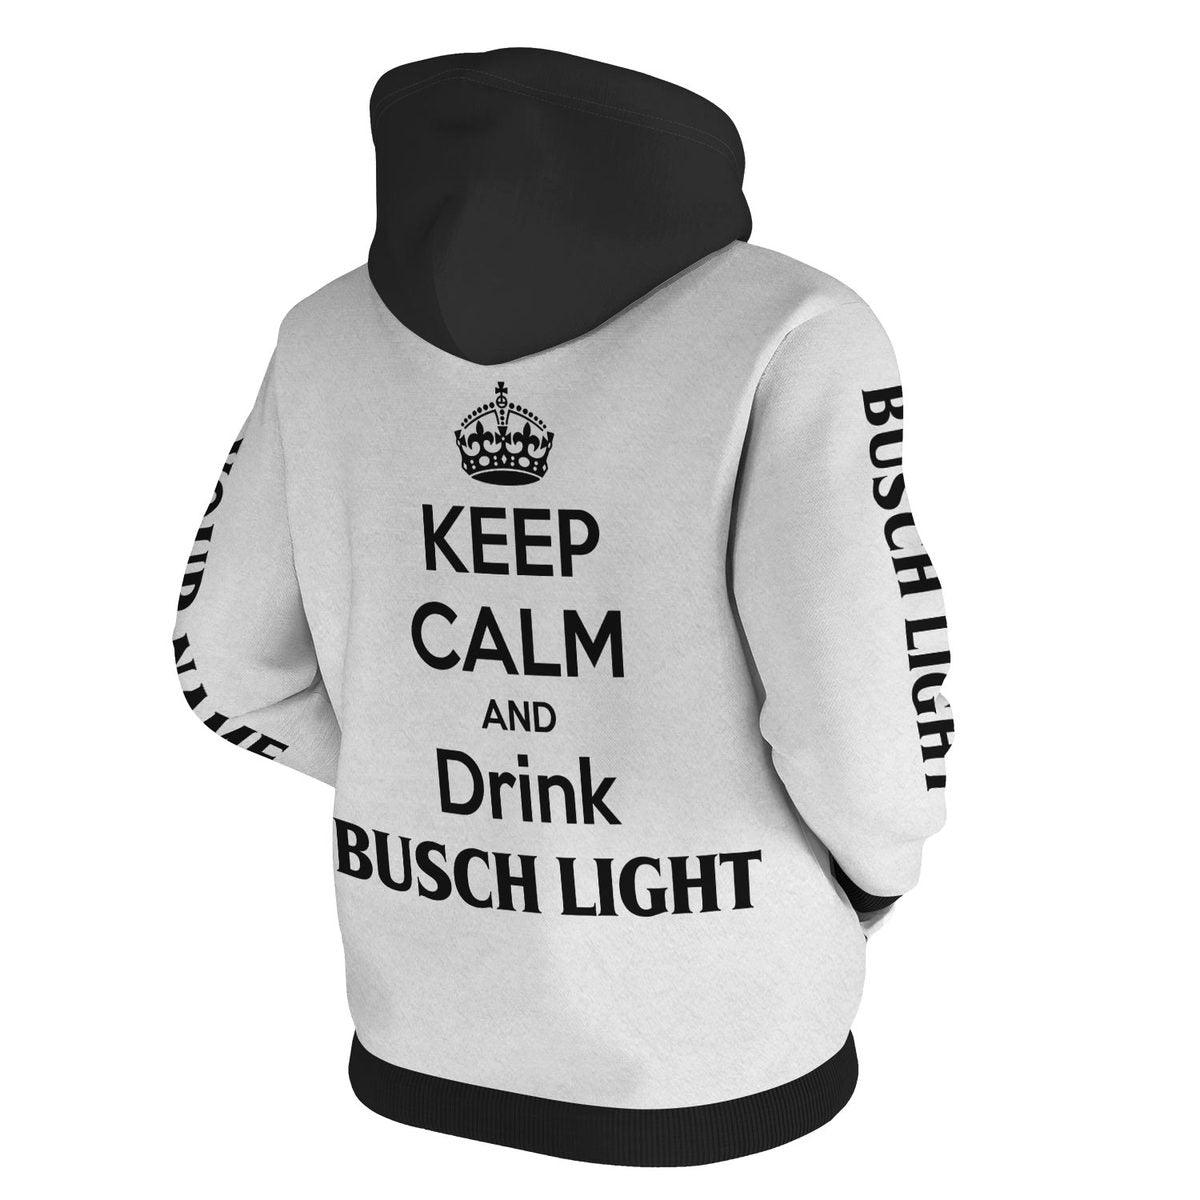 Busch Light Keep Calm And Drink Hoodie - VinoVogue.com